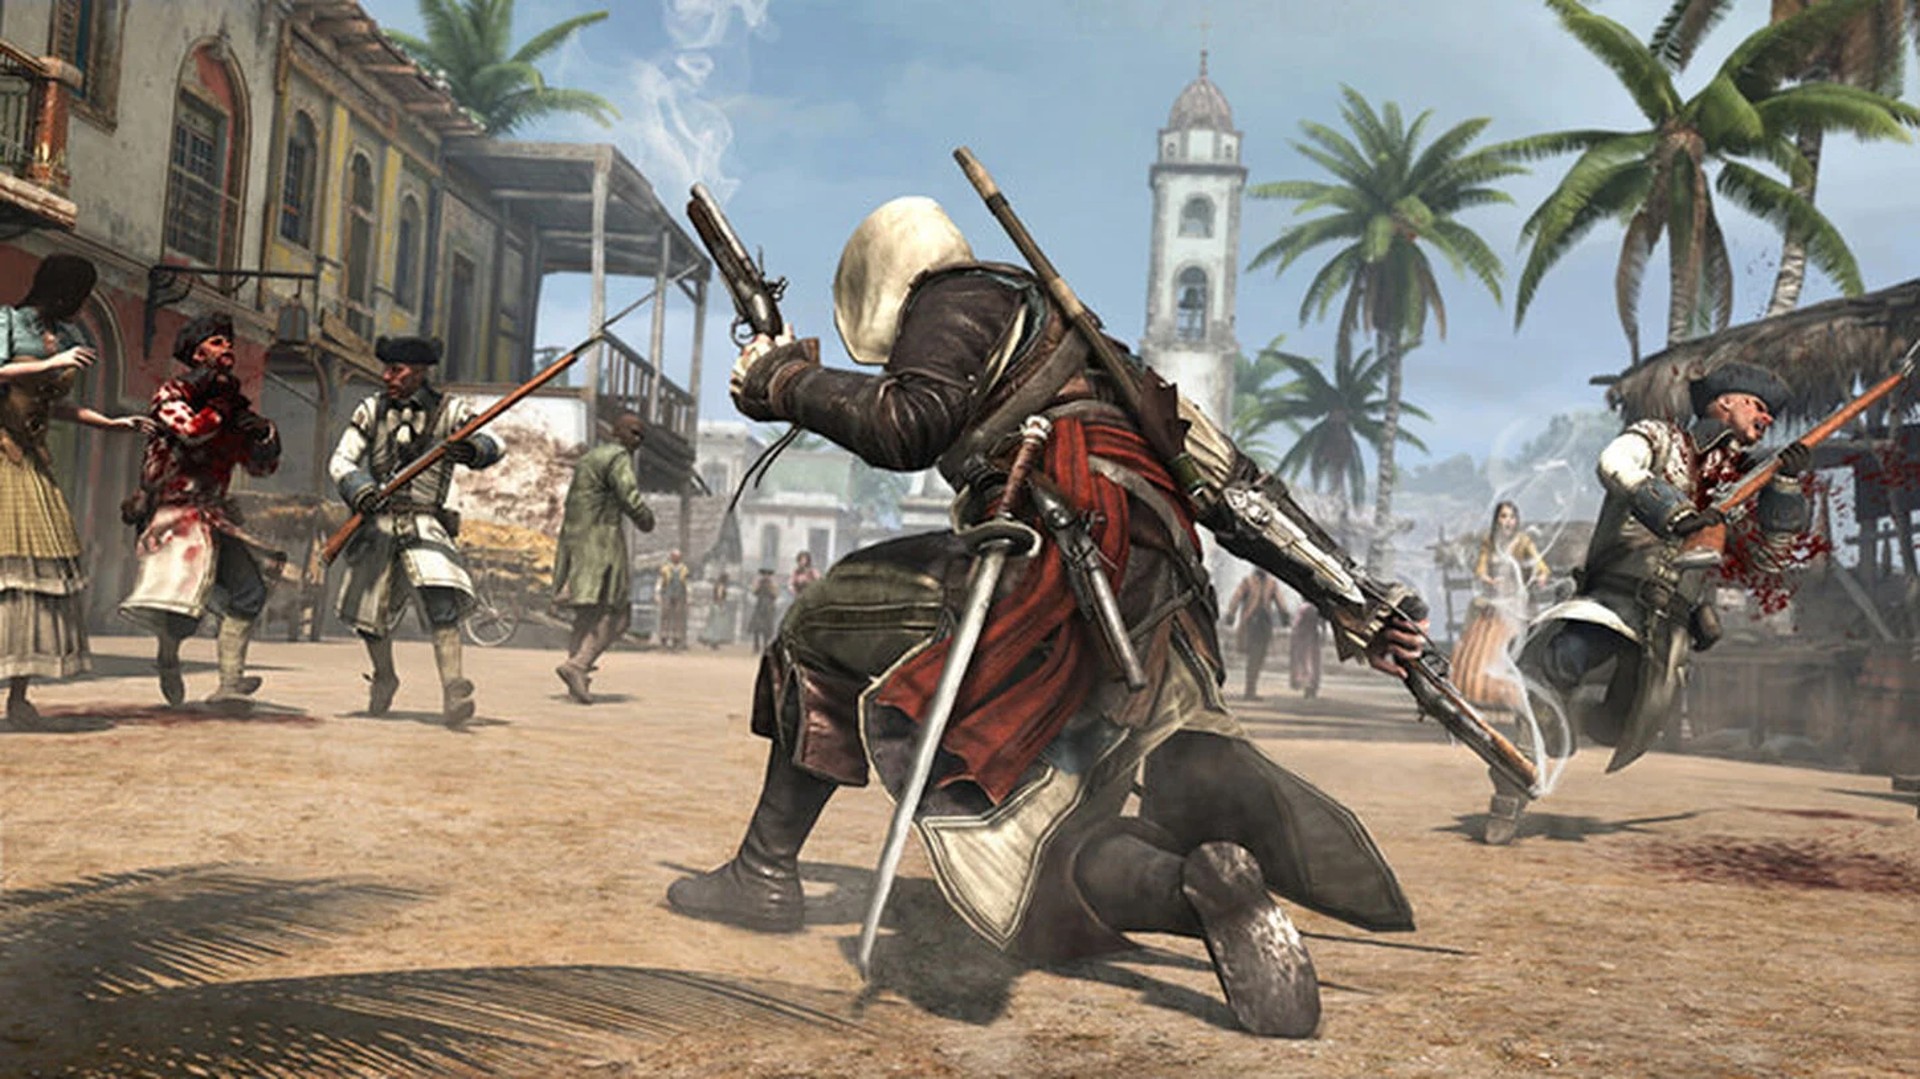 ข่าวลือ Ubisoft มีการเลื่อนวางจำหน่าย Assassin’s Creed บางภาคที่กำลังพัฒนาไปกลางปี ค.ศ. 2023 แทน